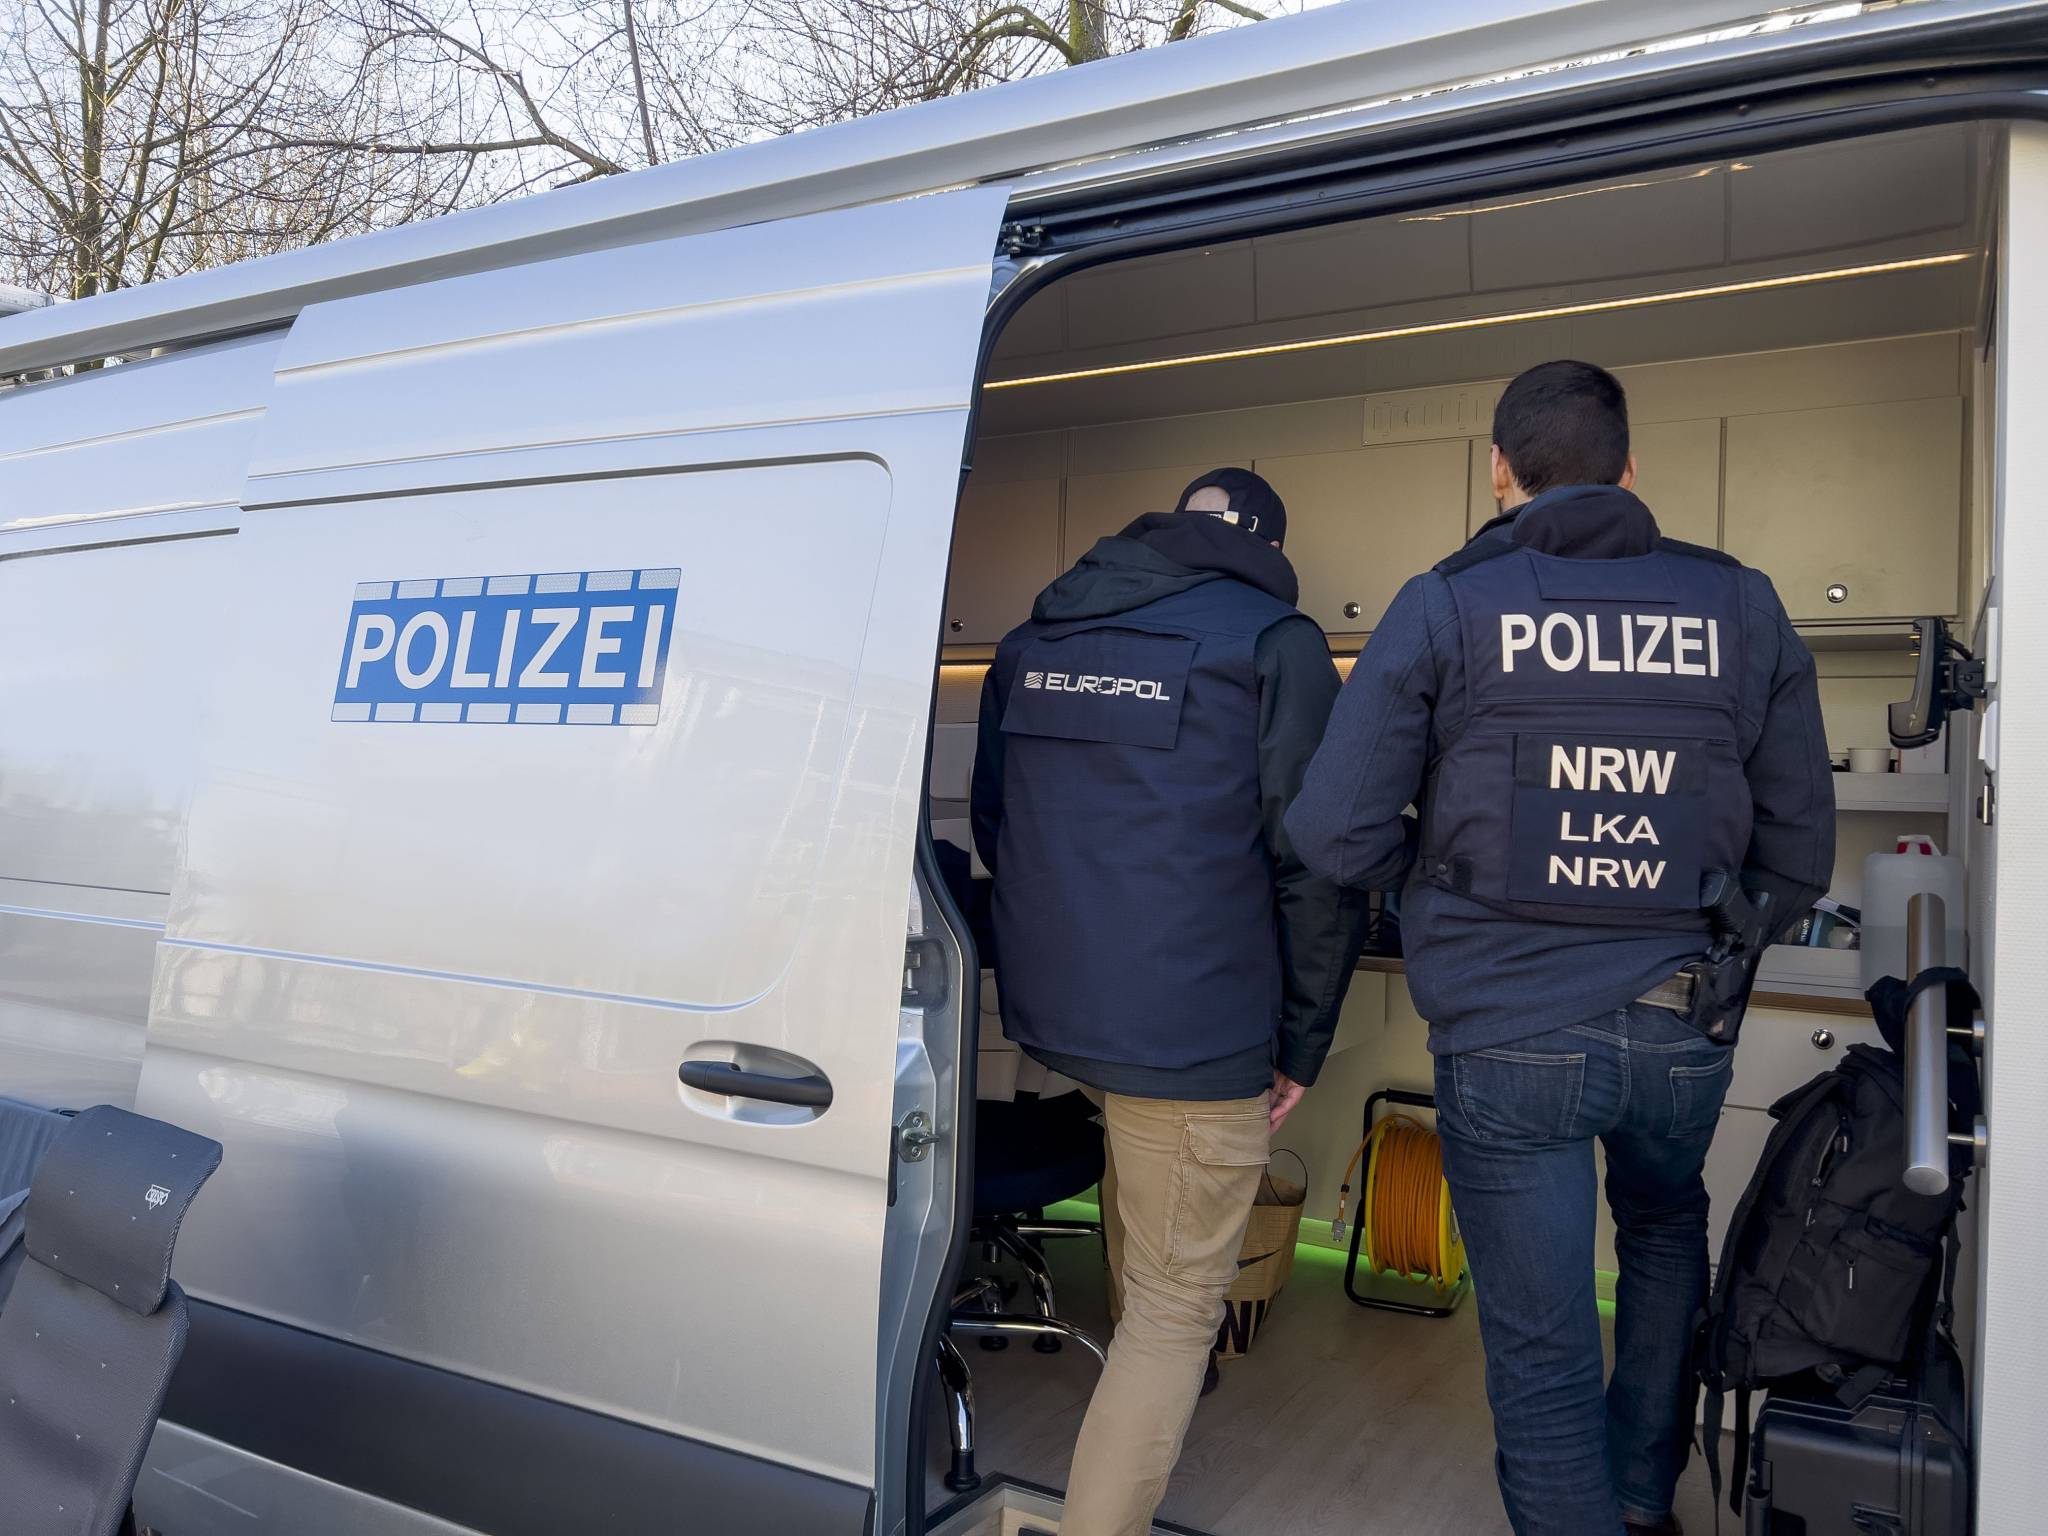 Ransomware : comment les polices européennes coopèrent pour s'attaquer au terrible DoppelPaymer